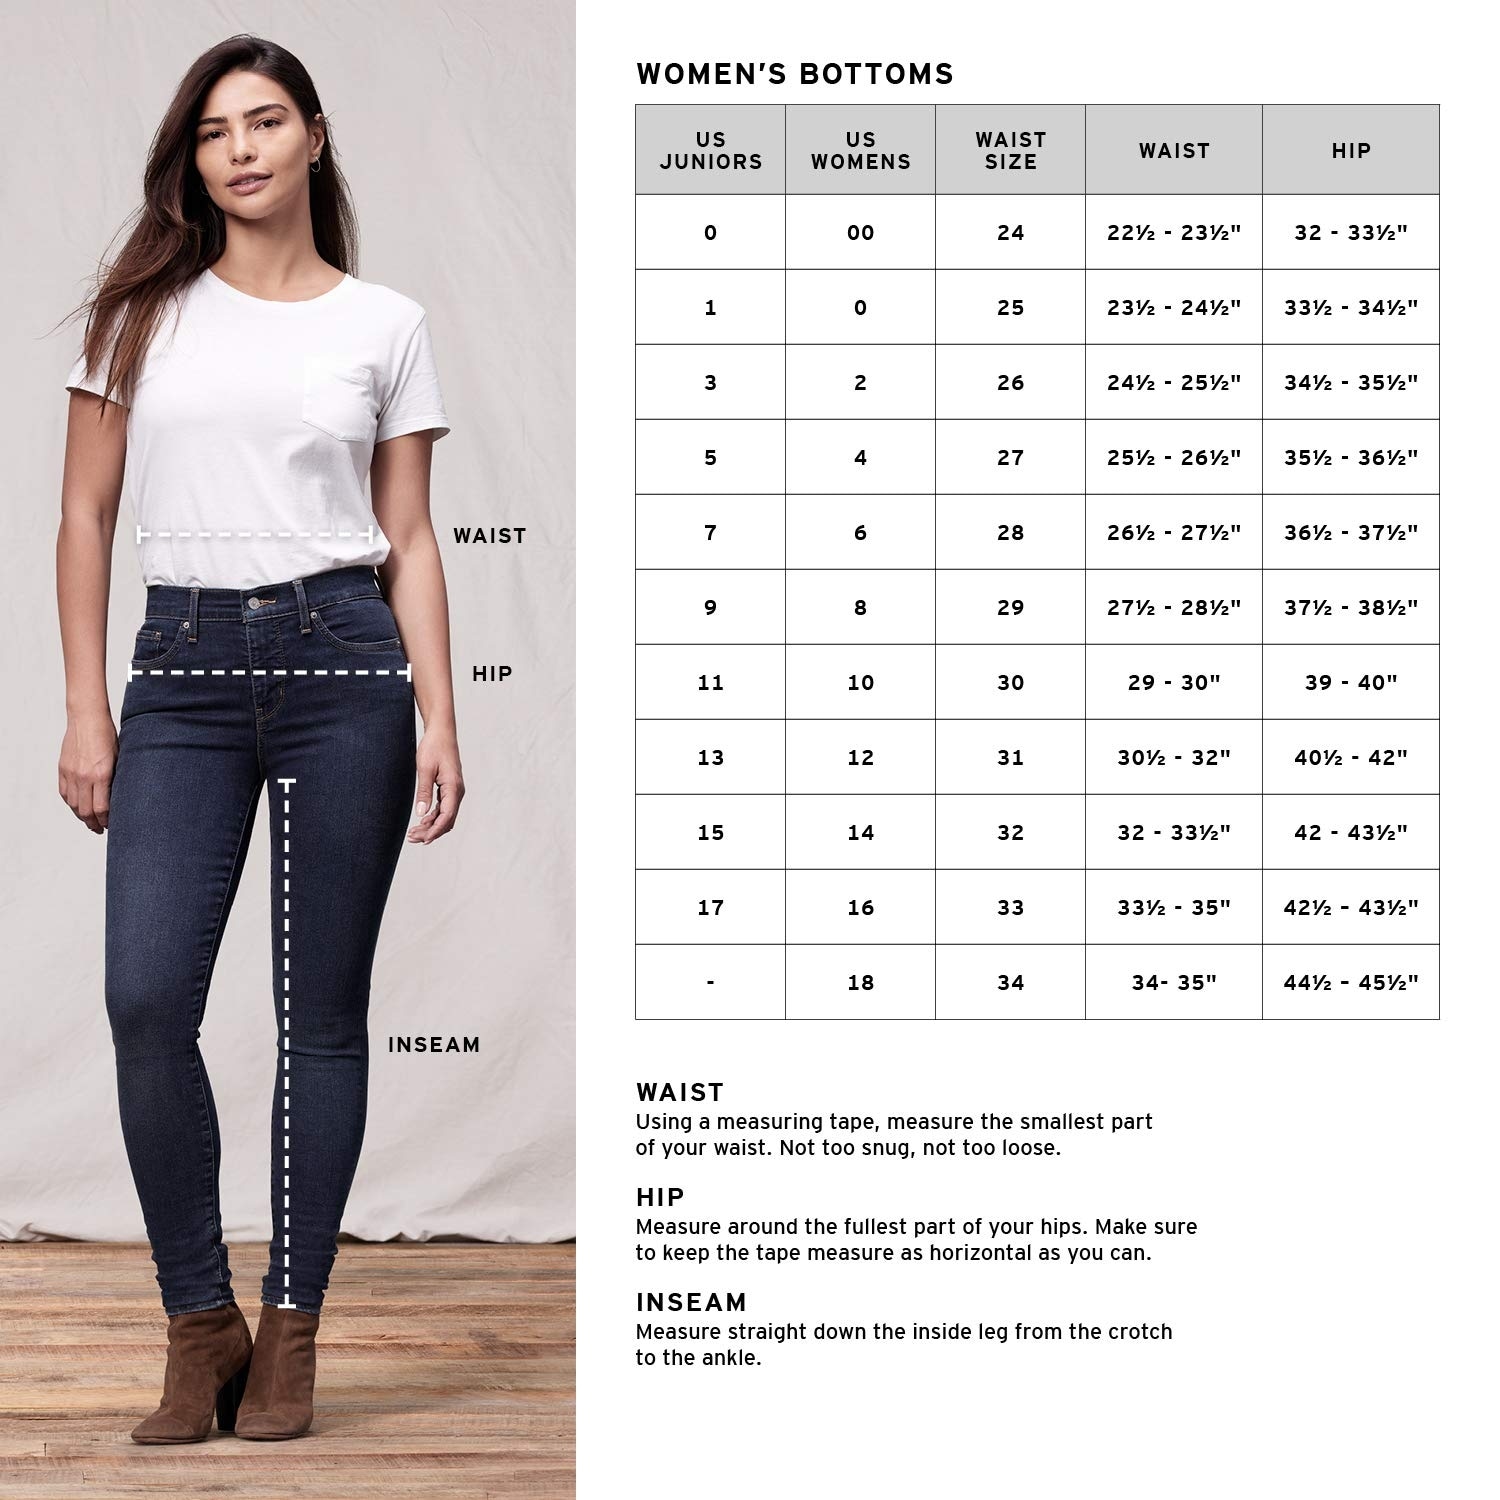 a size 32 in women's jeans